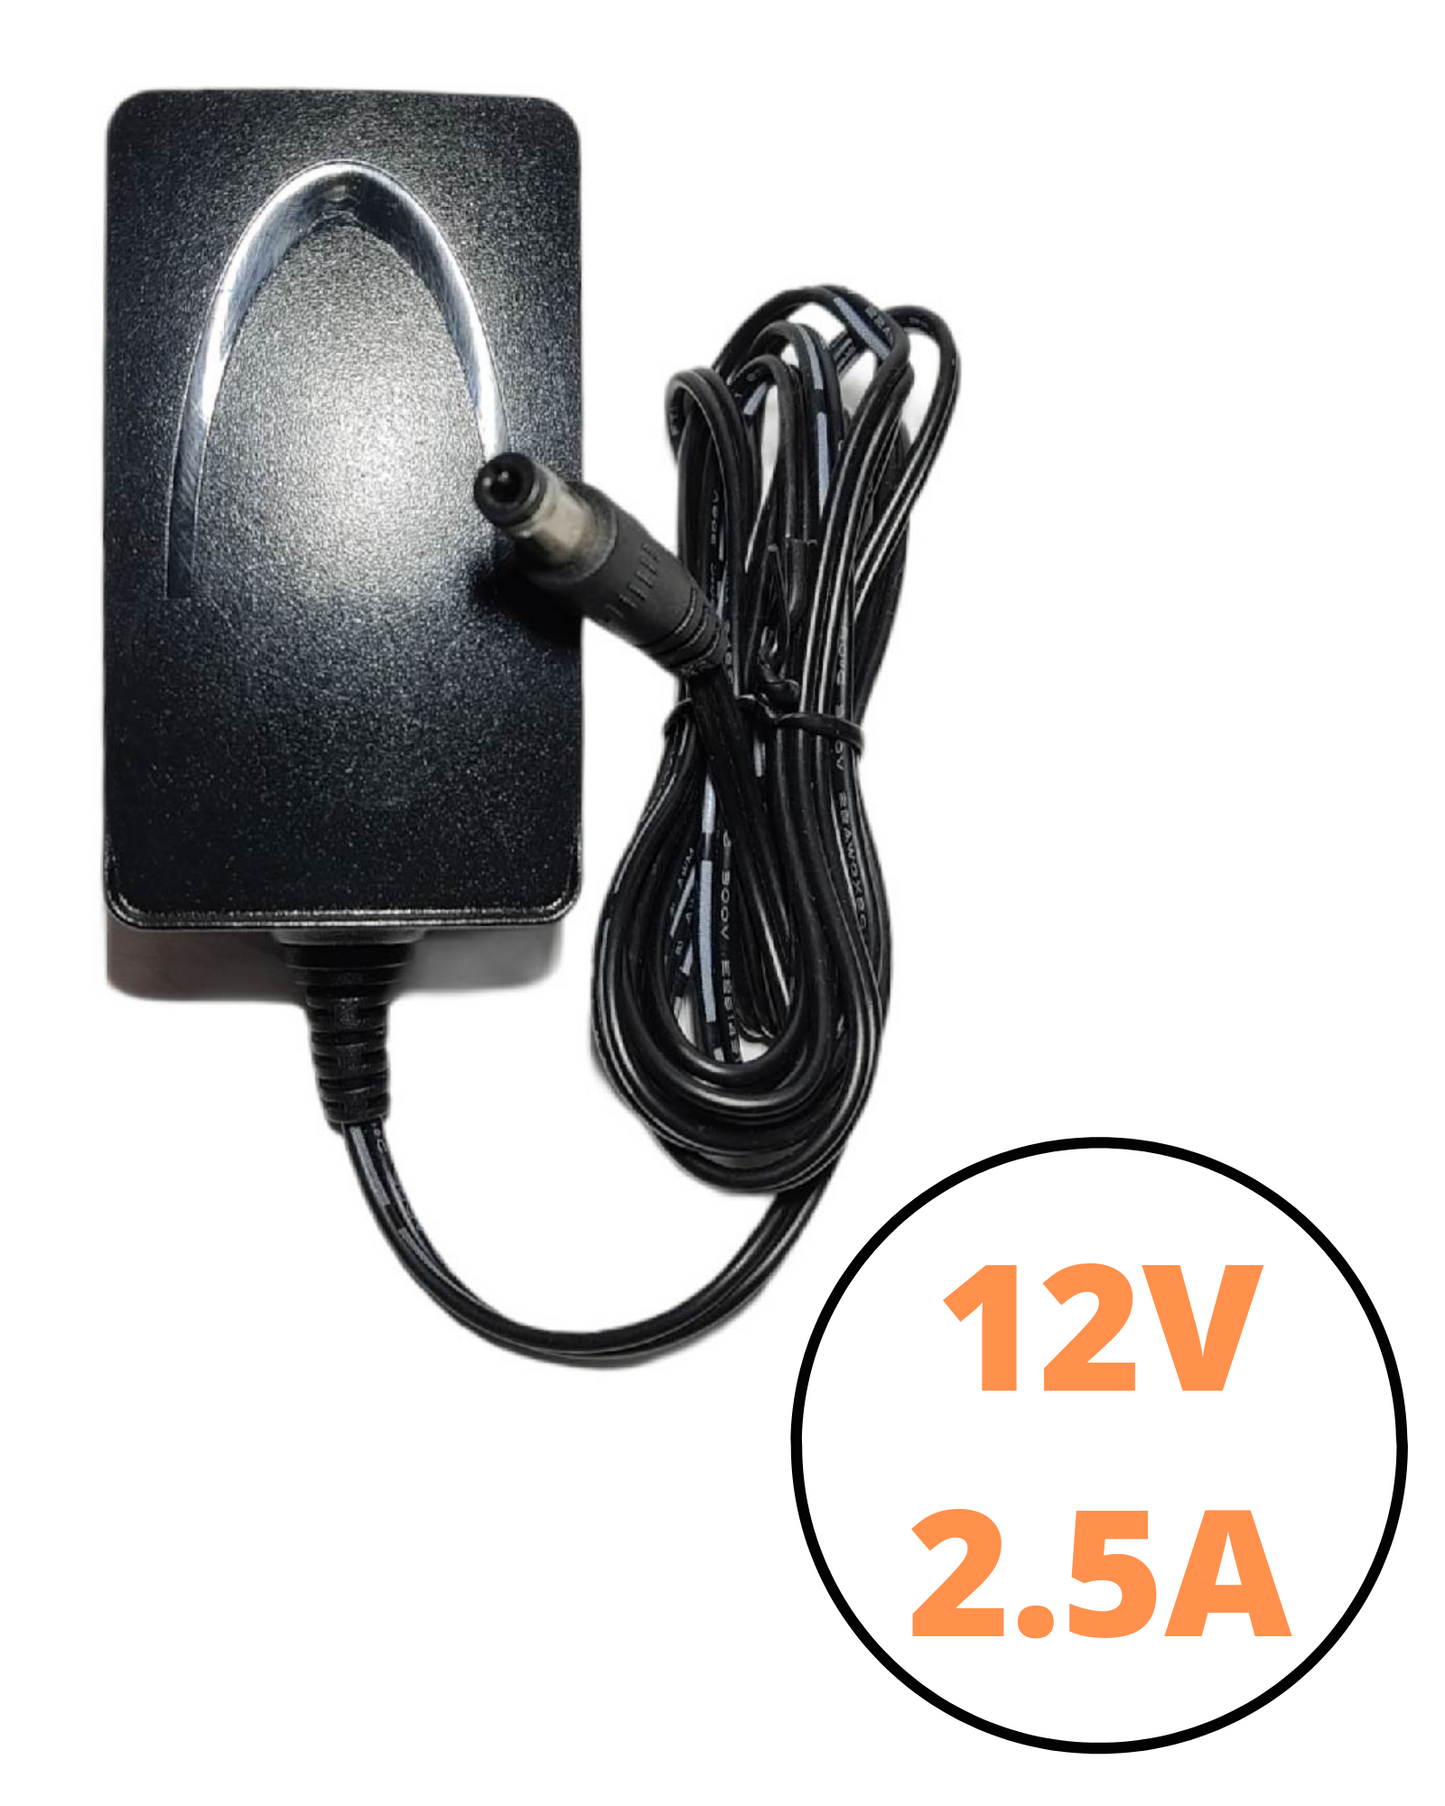 Eliminador de corriente 12v 2a | Fuente de poder para tiras LED